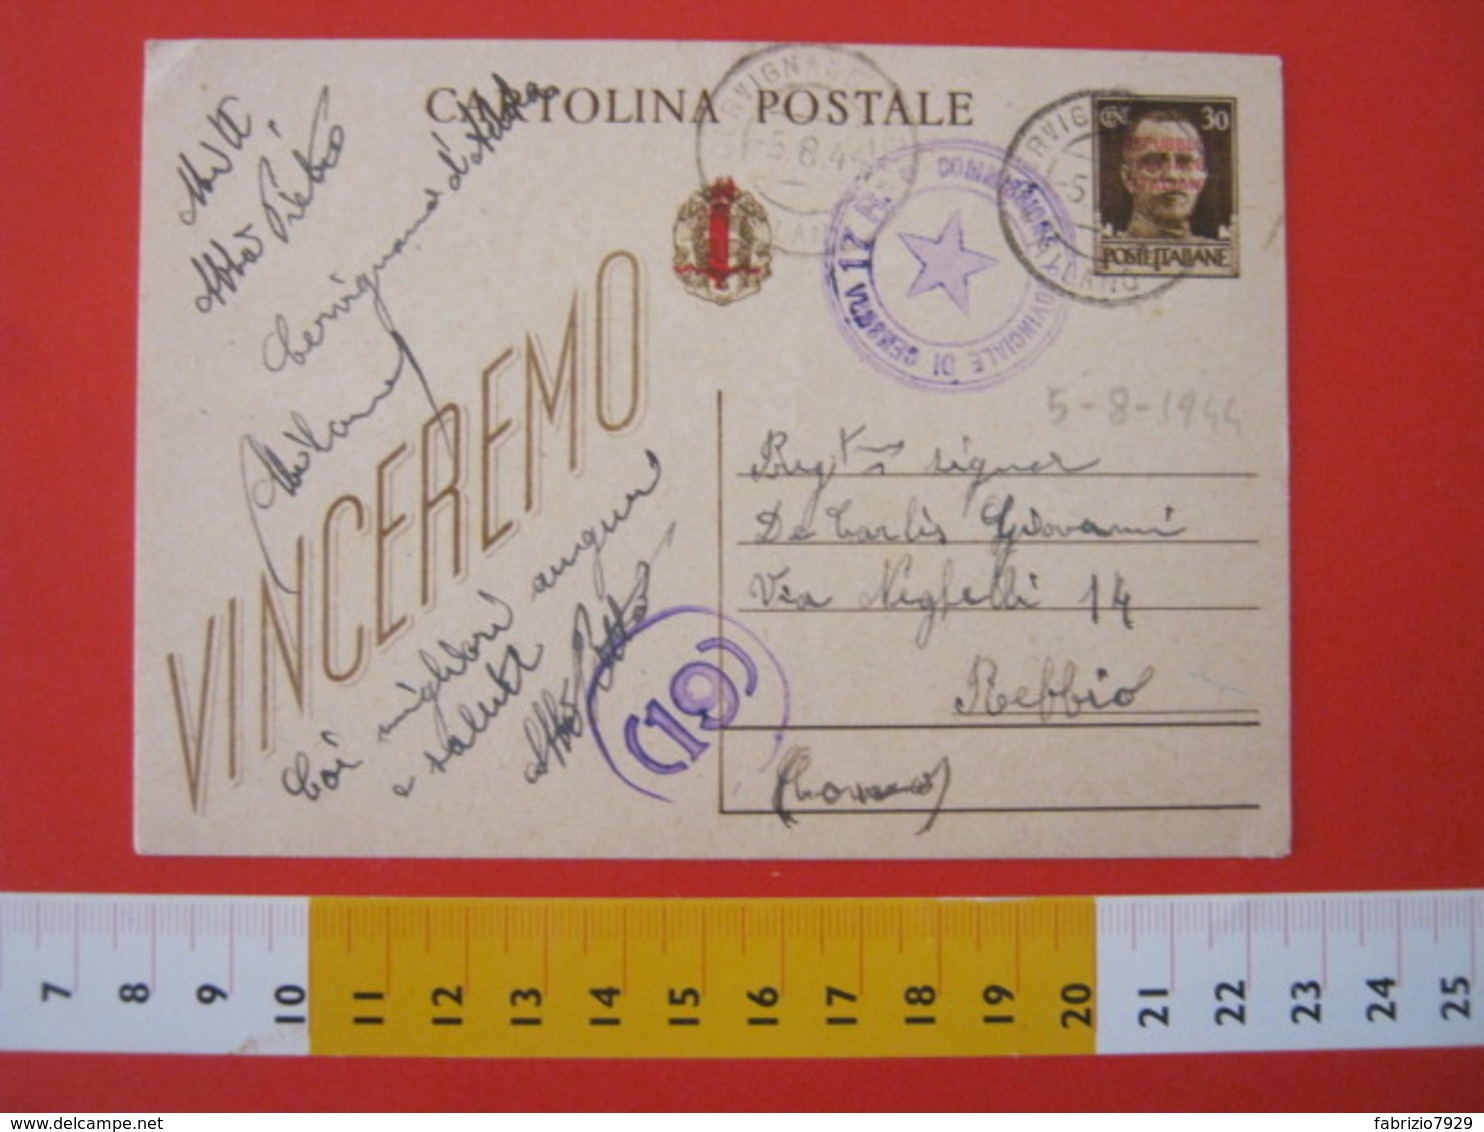 PC.3 ITALIA RSI CARTOLINA POSTALE - 1944 VINCEREMO SOVRASTAMPATA ROSSO FASCIO DA CERVIGNANO ADDA MILANO LODI 5/8 CENSURA - Stamped Stationery